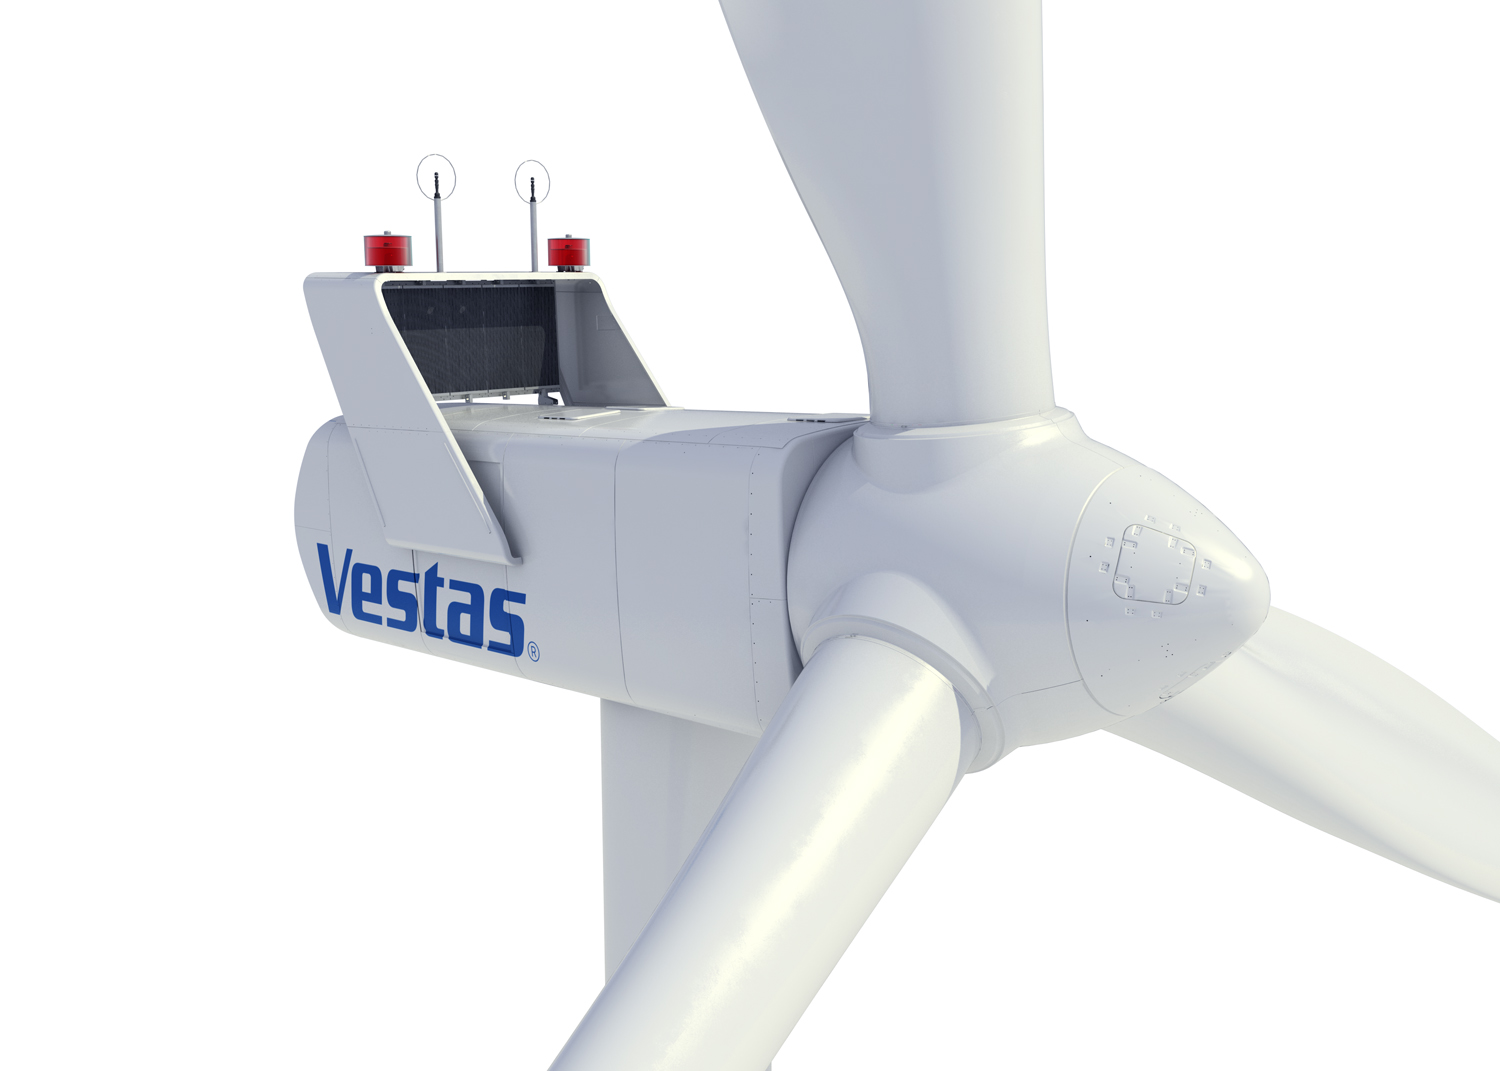 Vestas presentará los aerogeneradores V150-4.2 MW en Sudamérica con pedido de energía eólica de 101 MW en Brasil